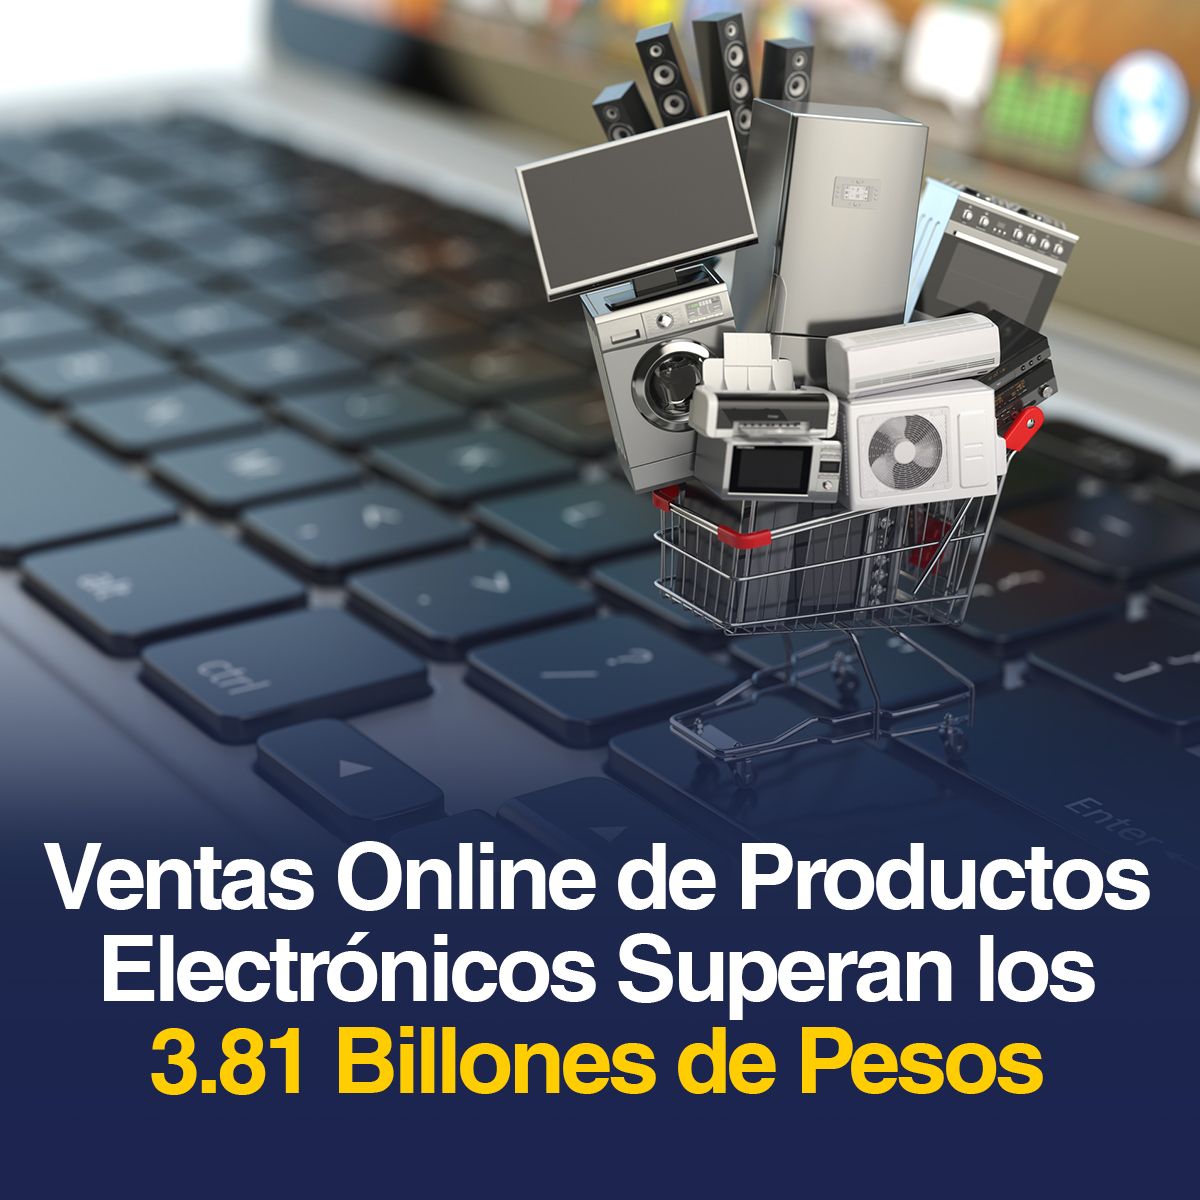 Ventas Online de Productos Electrónicos Superan los 3.81 Billones de Pesos